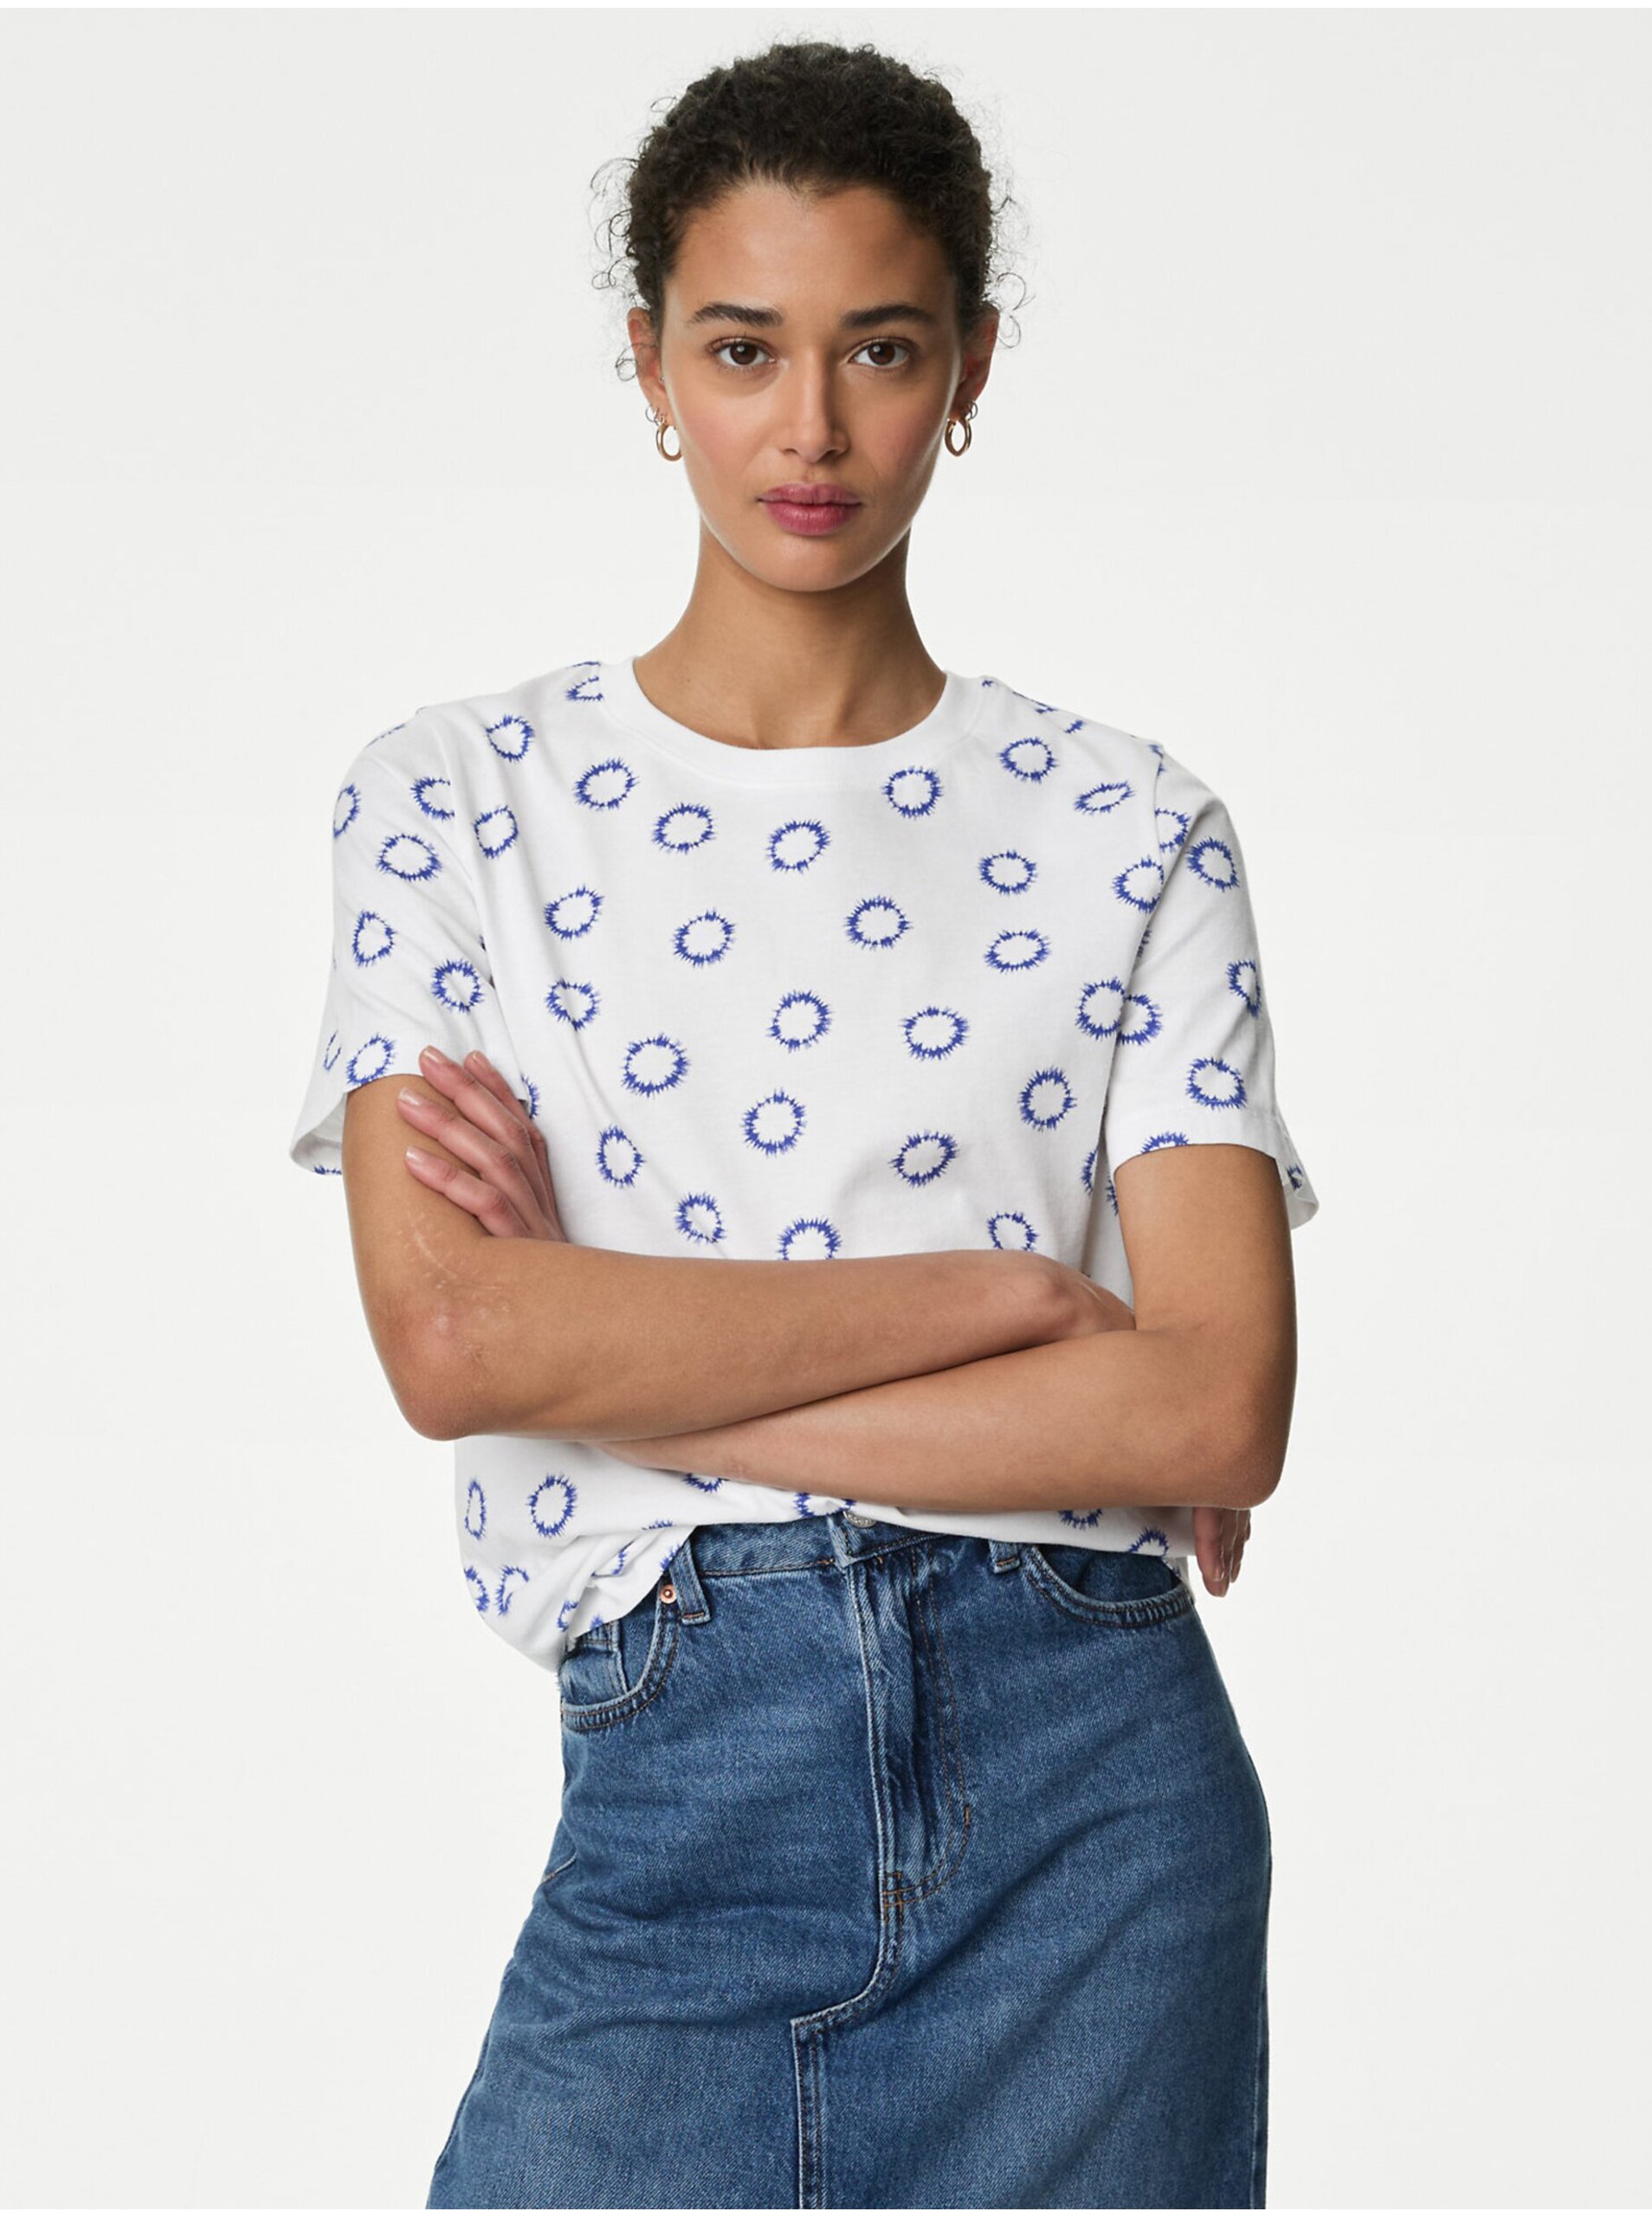 Lacno Modro-biele dámske vzorované tričko Marks & Spencer